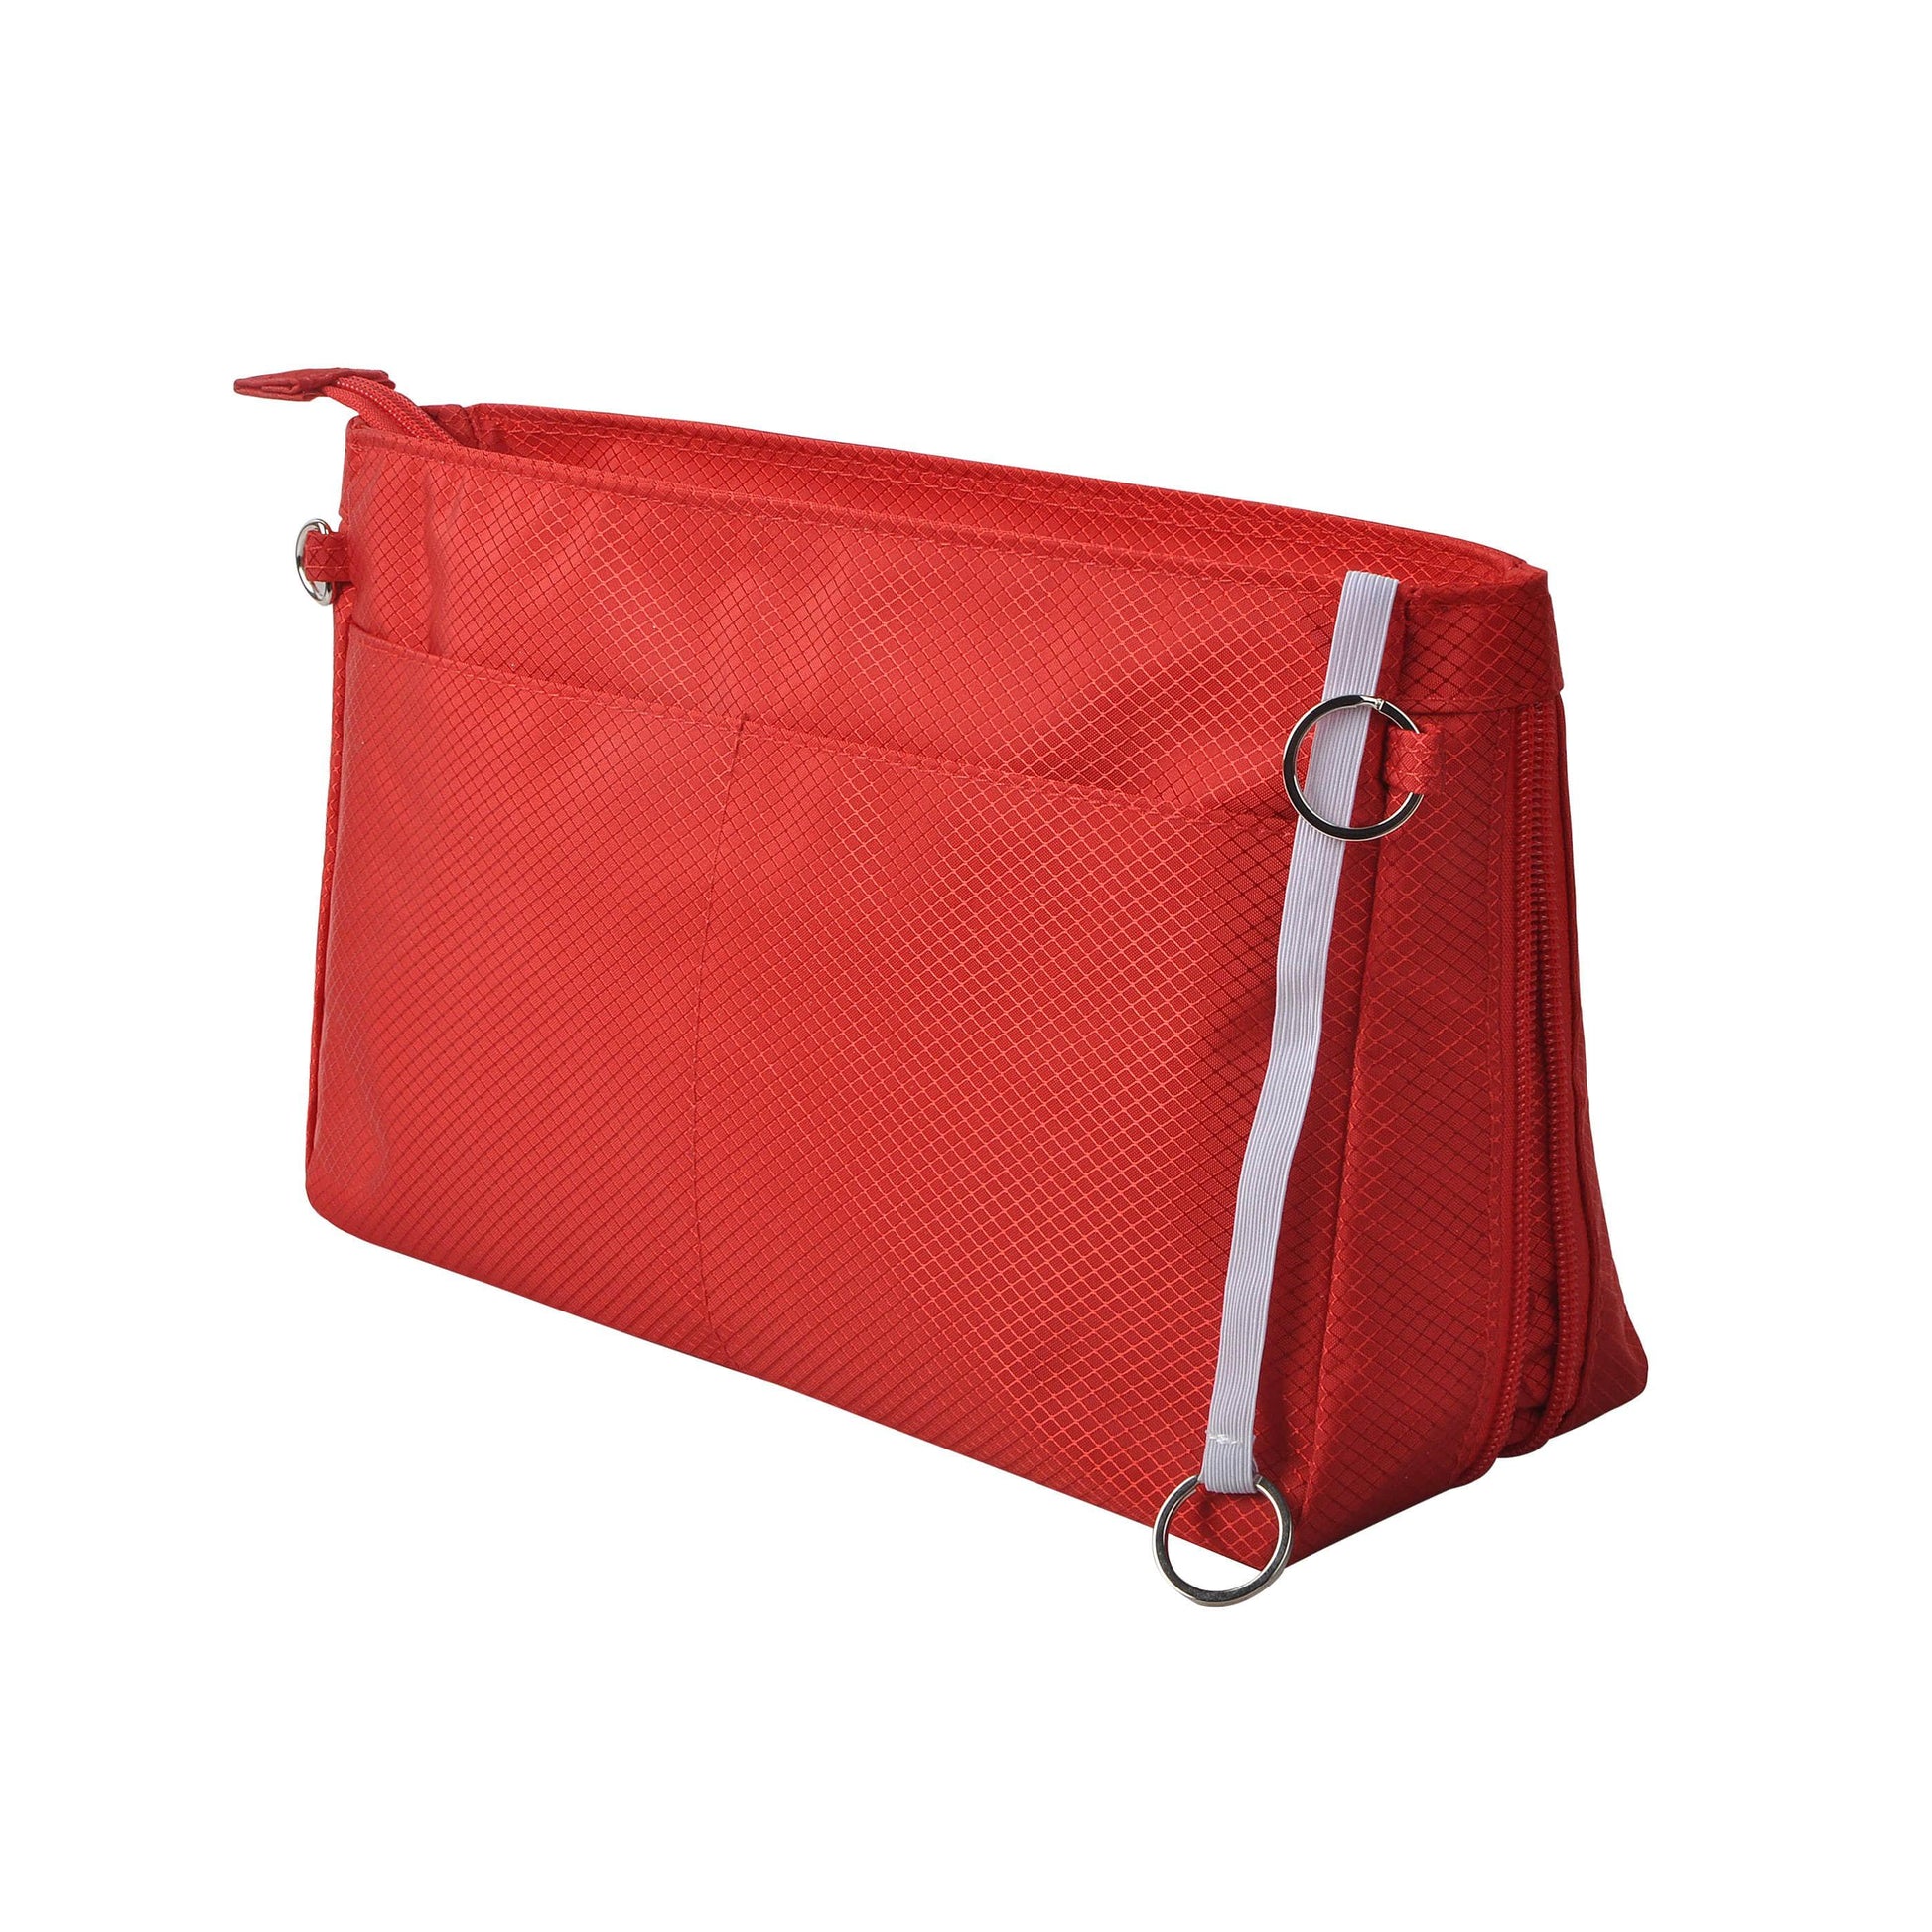 A-Premium Nylon Purse Organizer Tote Handbag Insert Organizers Bag in –  Vercord